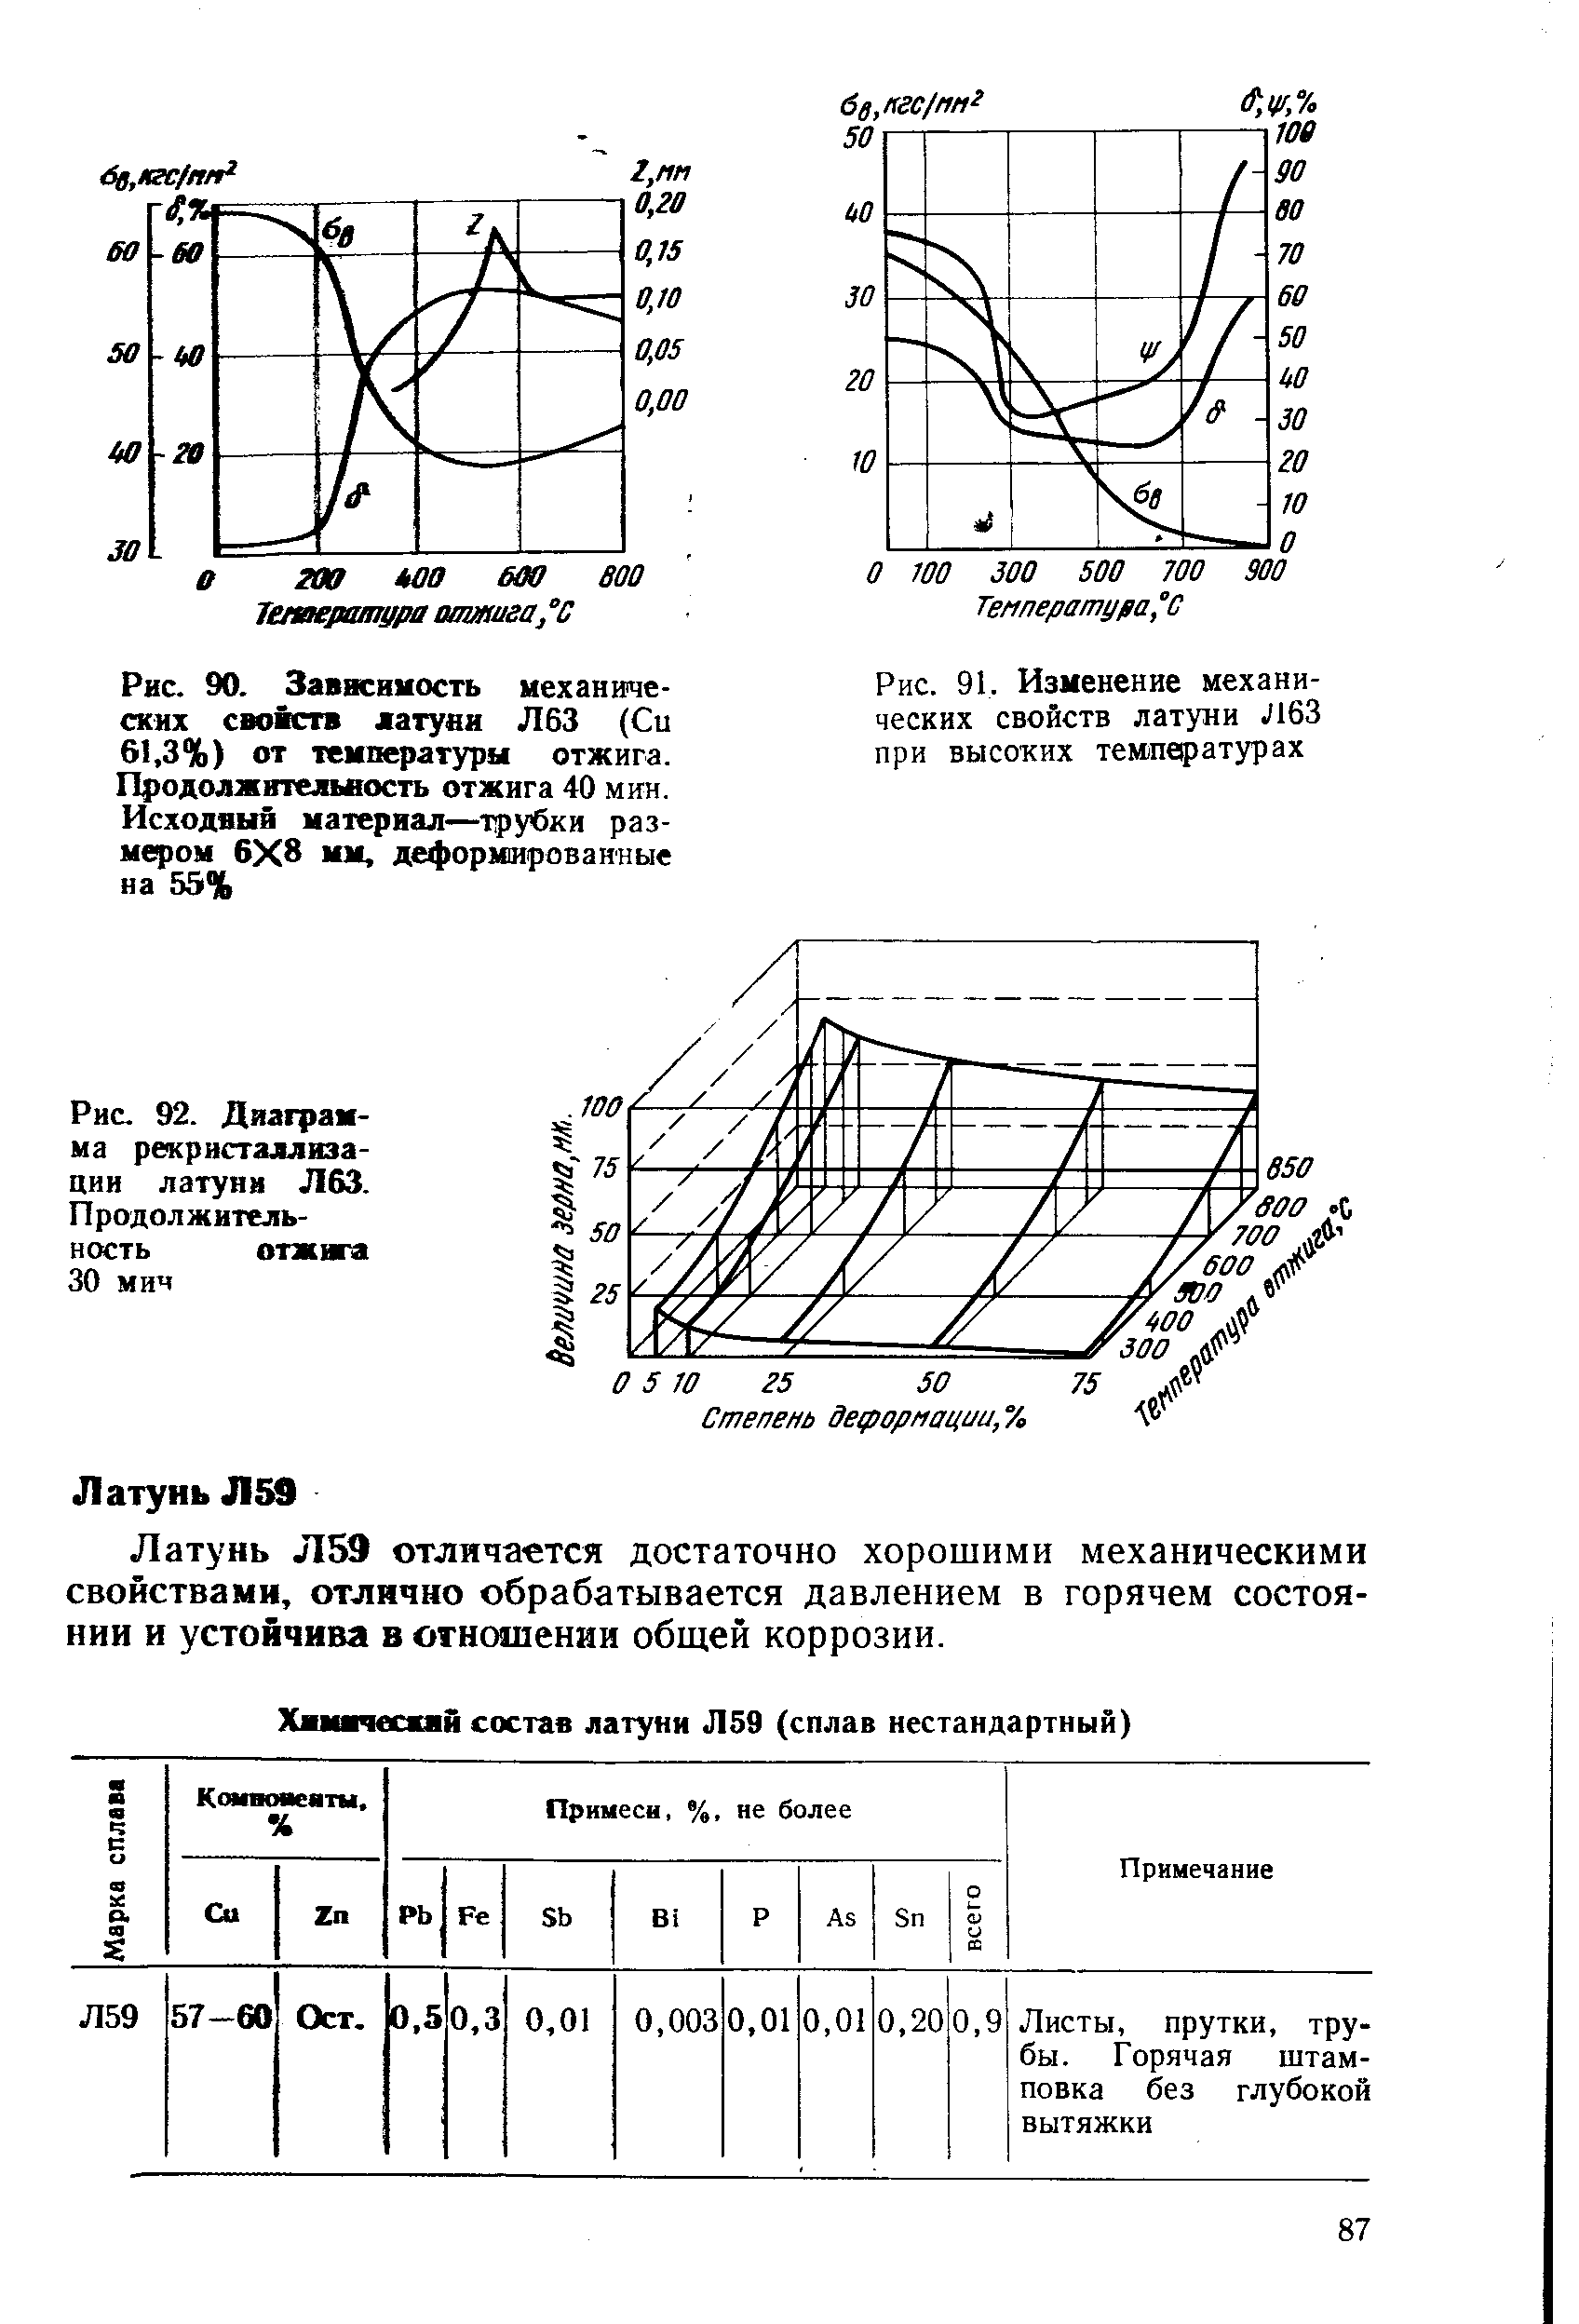 Рис. 92. Диаграмма рекристаллизации латуни Л63. Продолжительность отжига 30 мич
